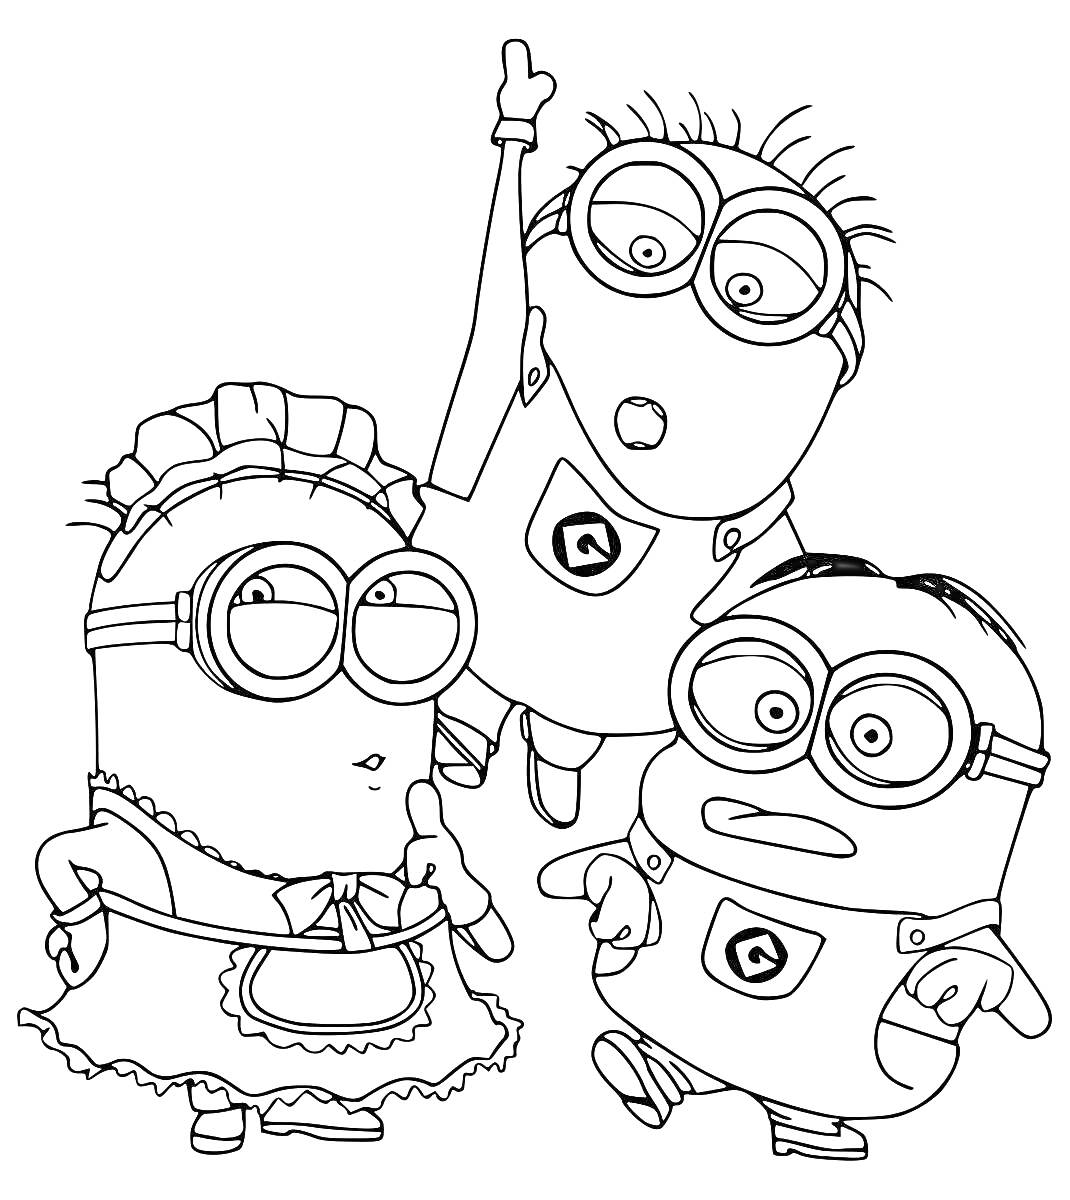 Раскраска Три Миньона, один в костюме горничной, второй расправил руку вверх, третий с причёской и очками